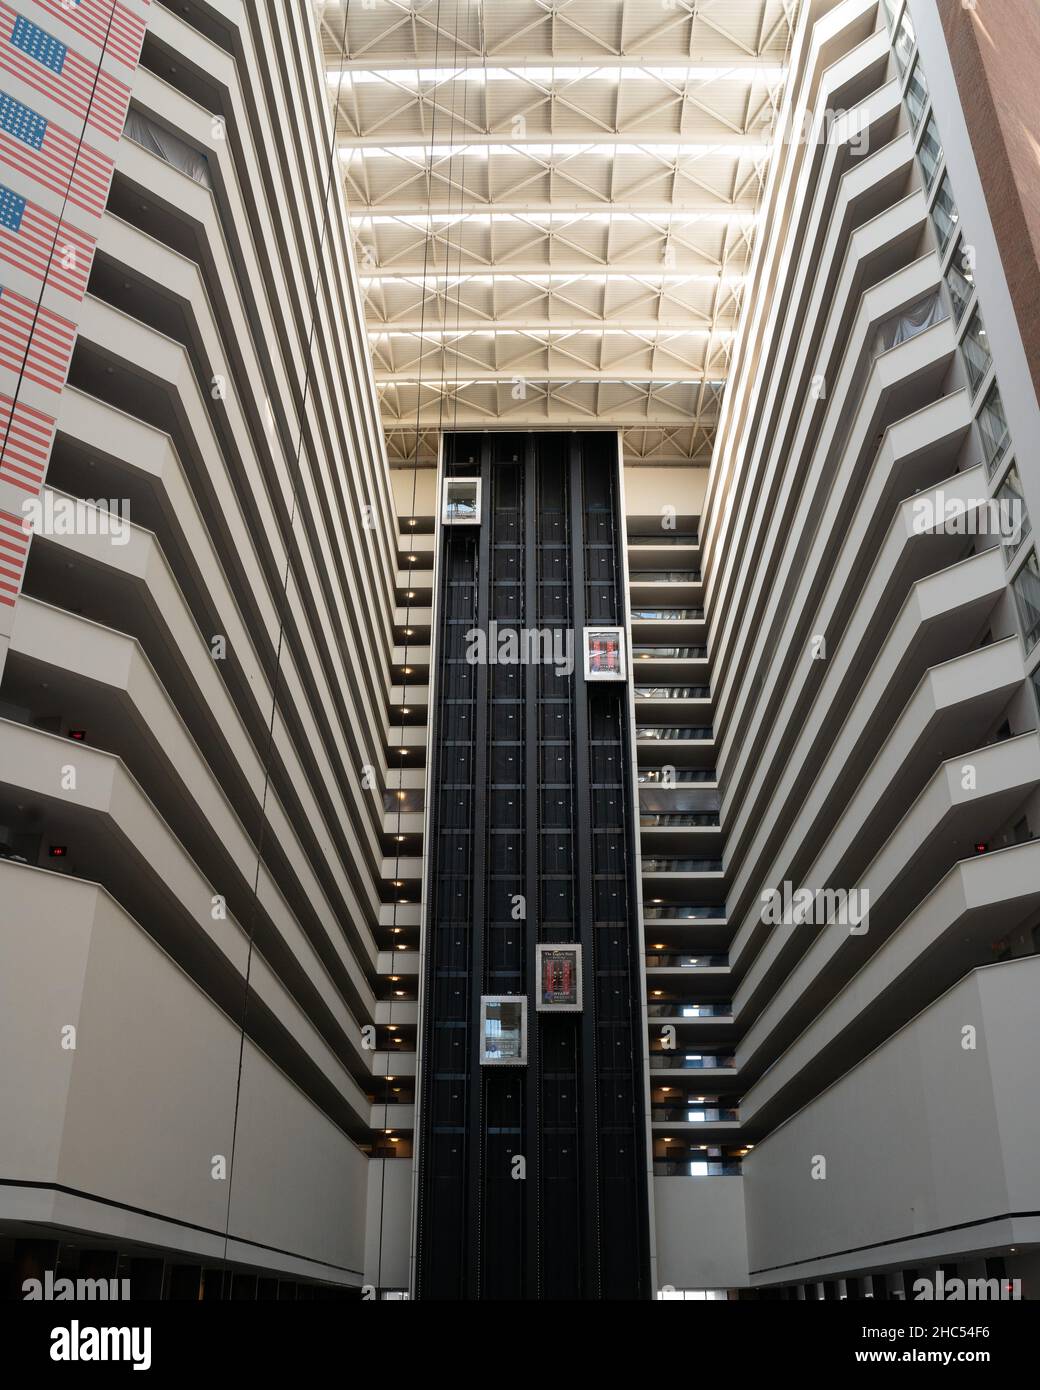 Innenansicht eines Gebäudes mit Aufzügen Stockfoto